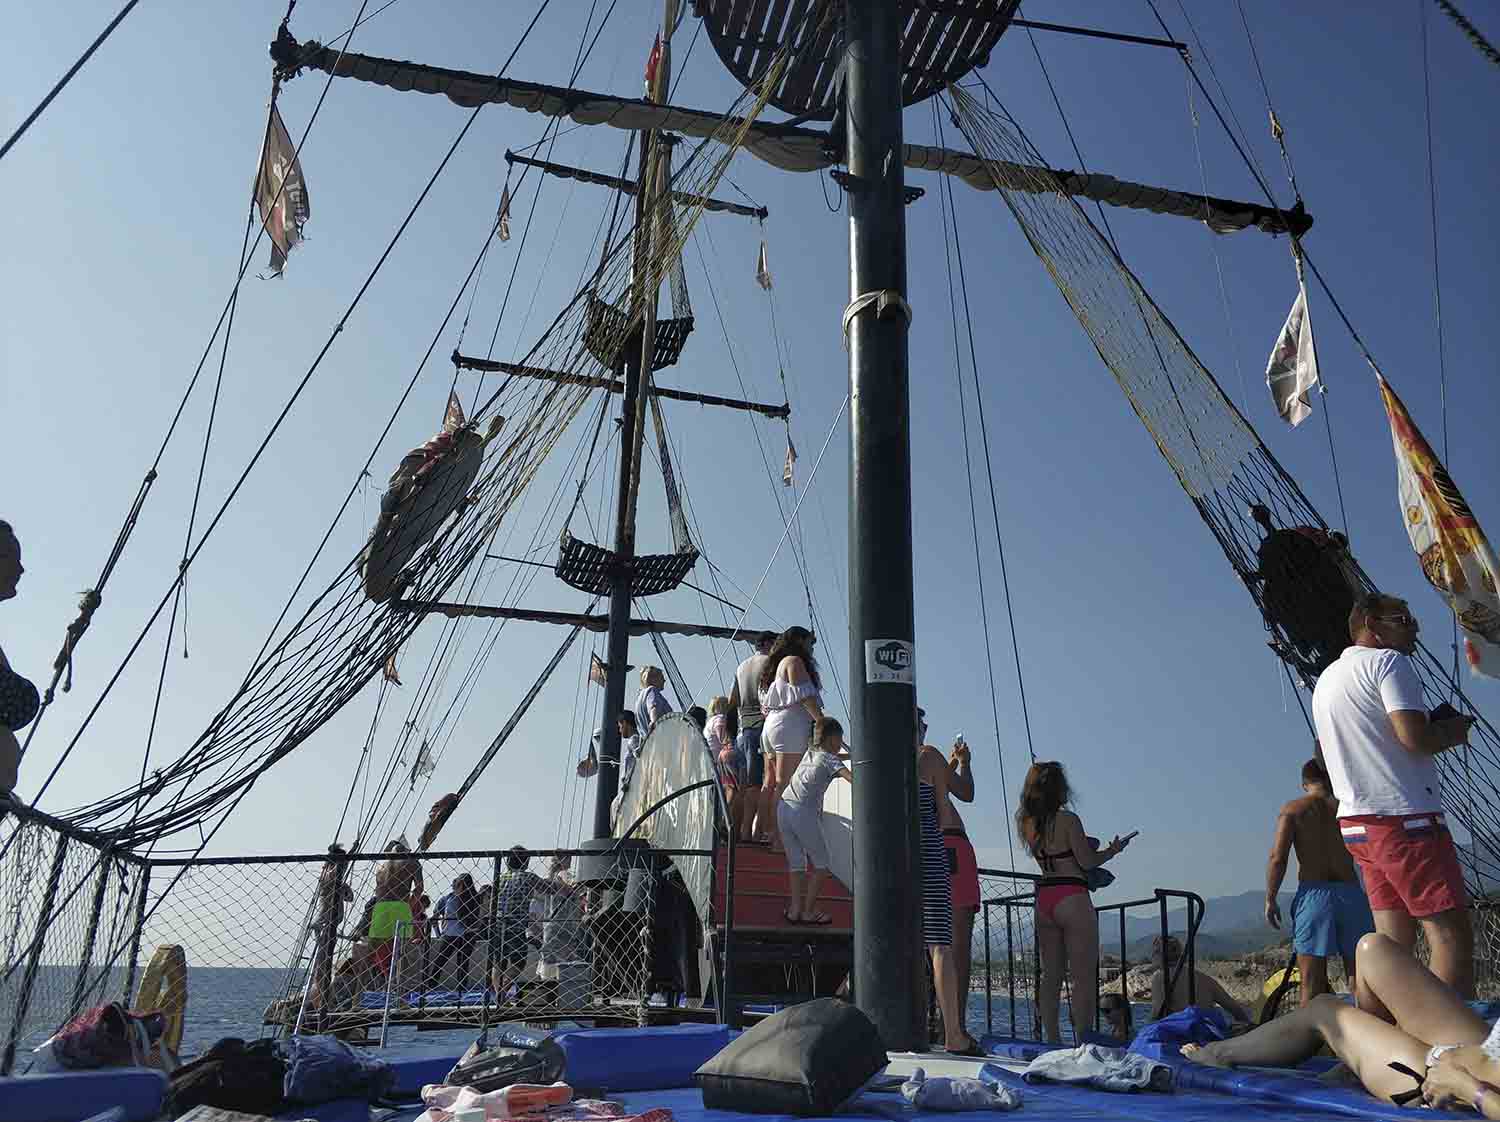 Пиратский корабль в Кемере